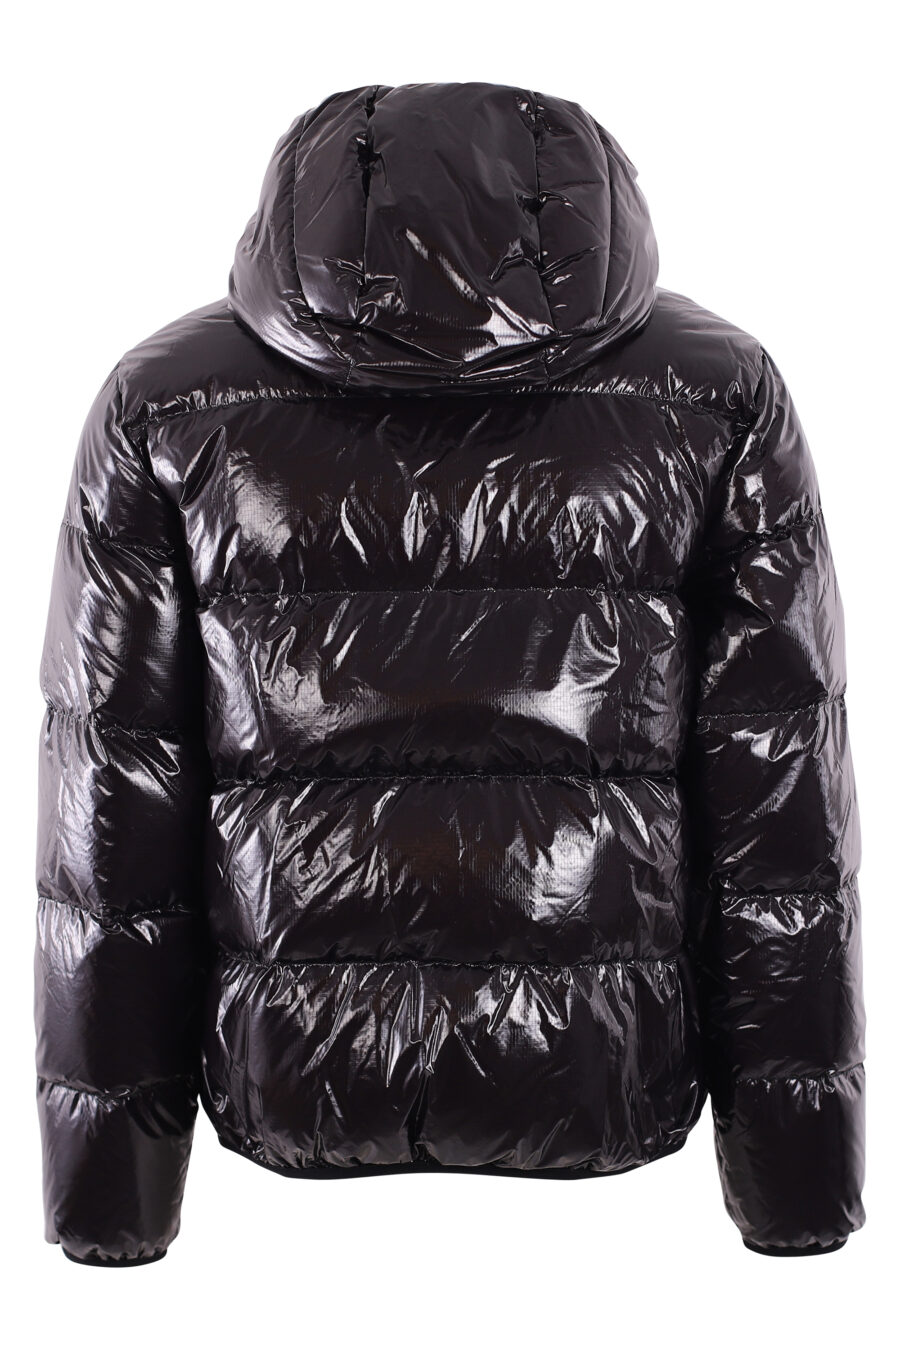 Glänzende schwarze Jacke mit weißer Logo-Steppkapuze - IMG 2891